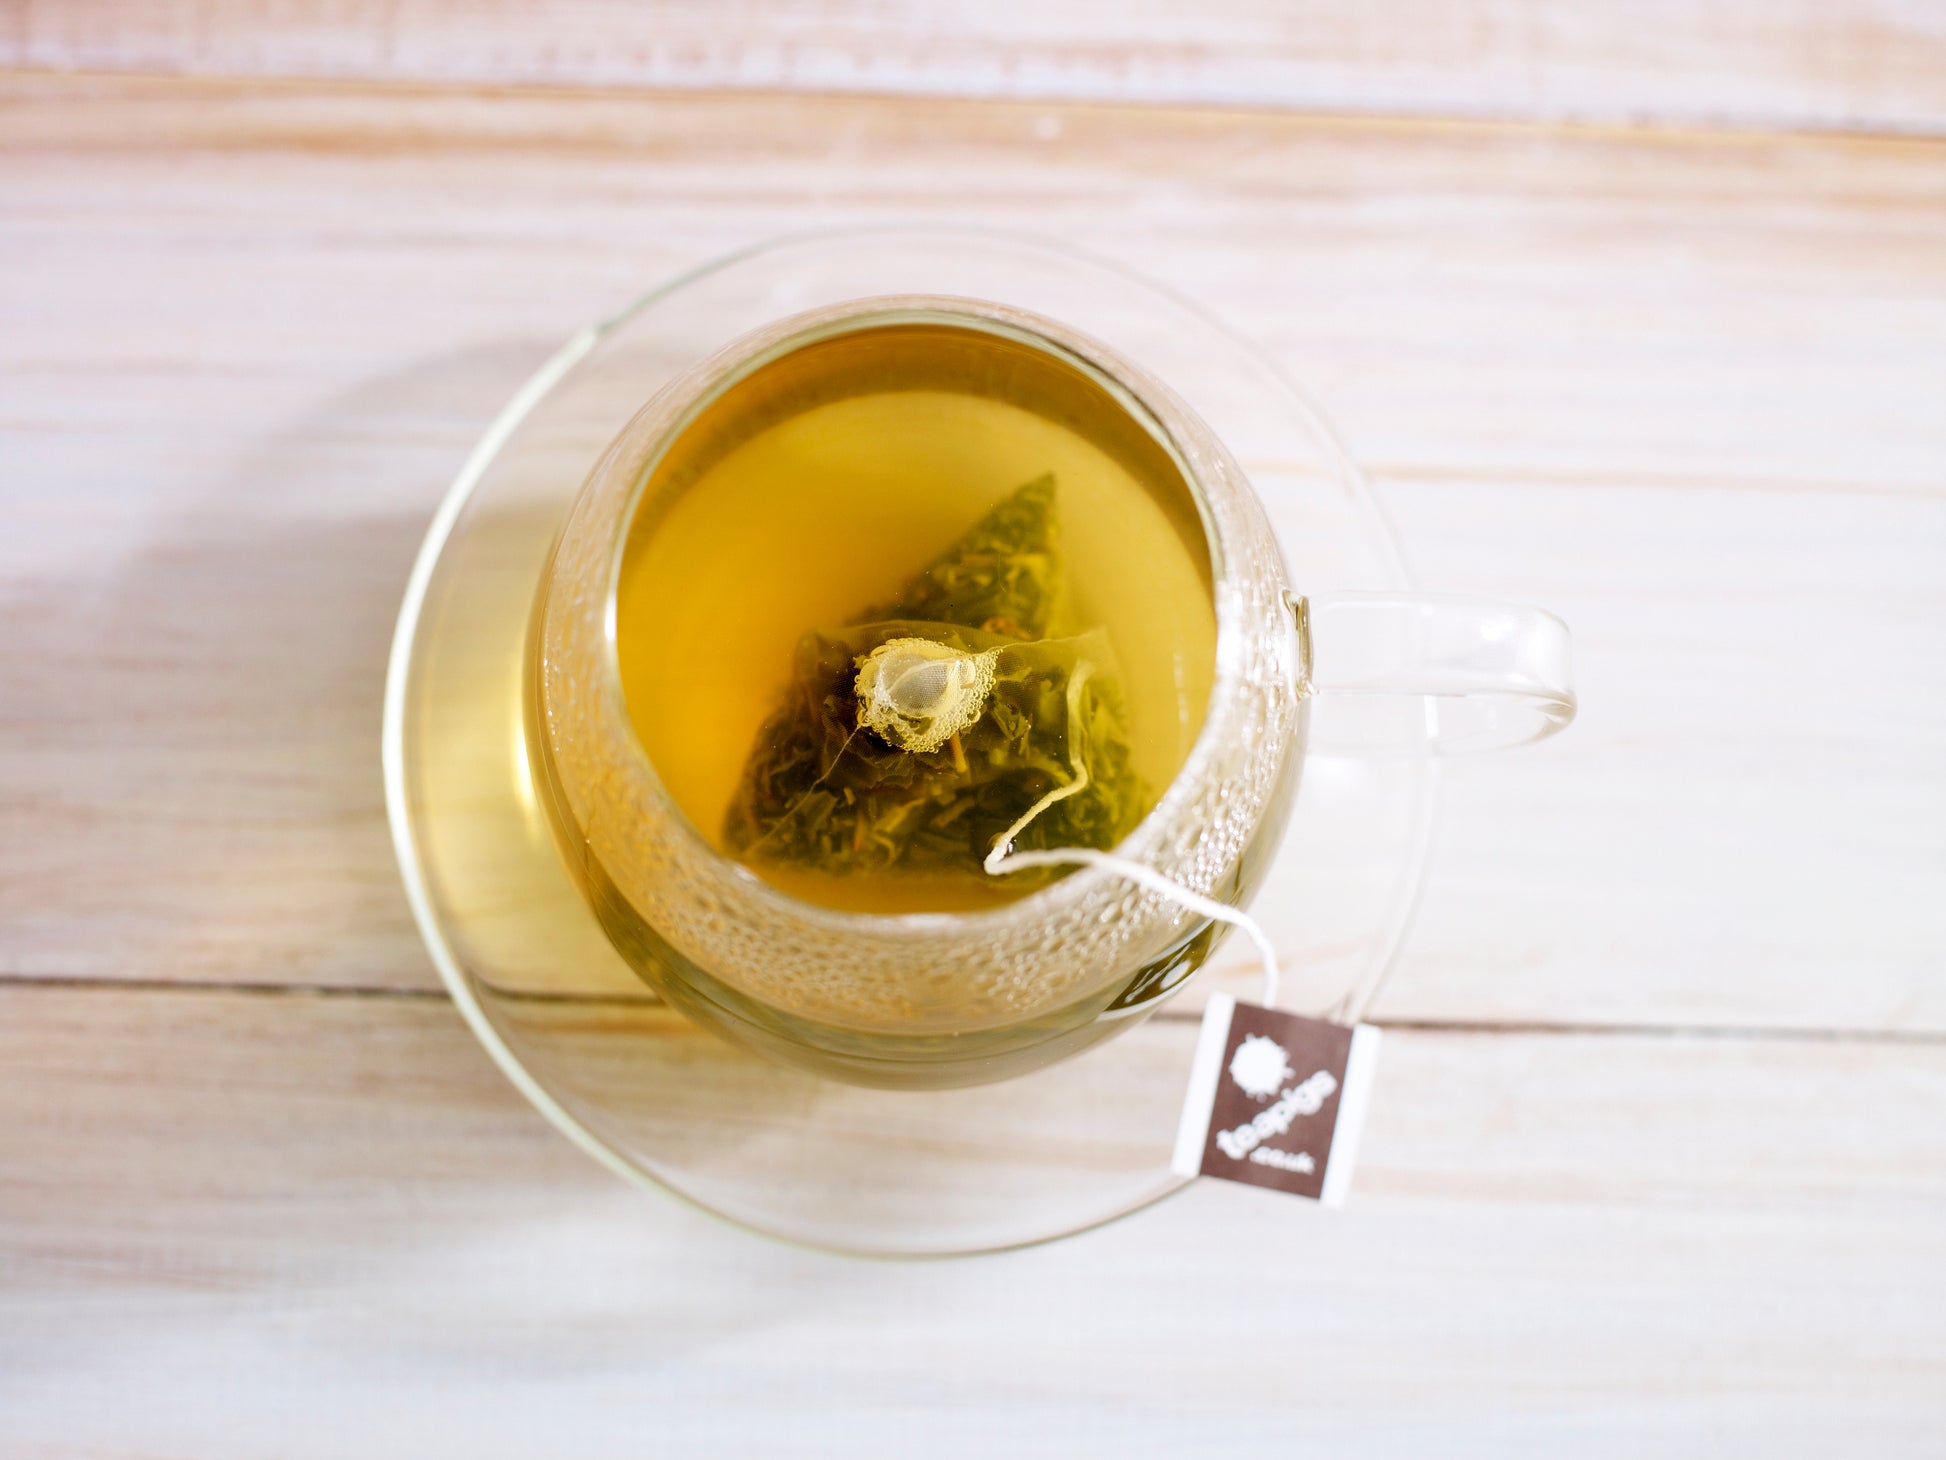 teapigs Mao Feng grøn te i kop